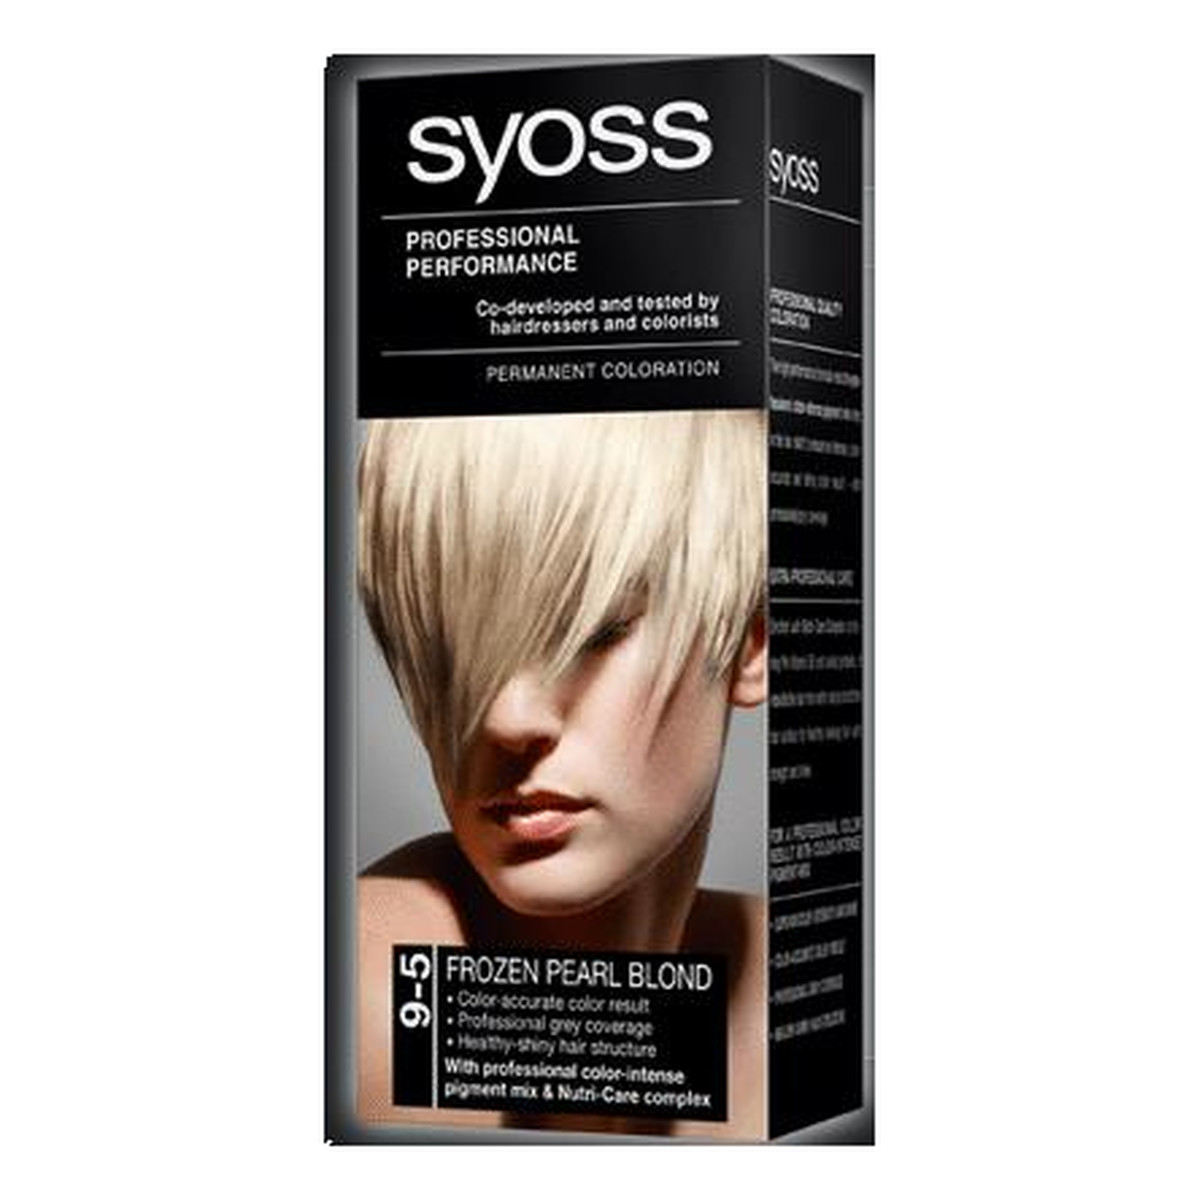 Syoss Professional Performance Farba Do Włosów Mroźny Perłowy Blond 9-5 115ml